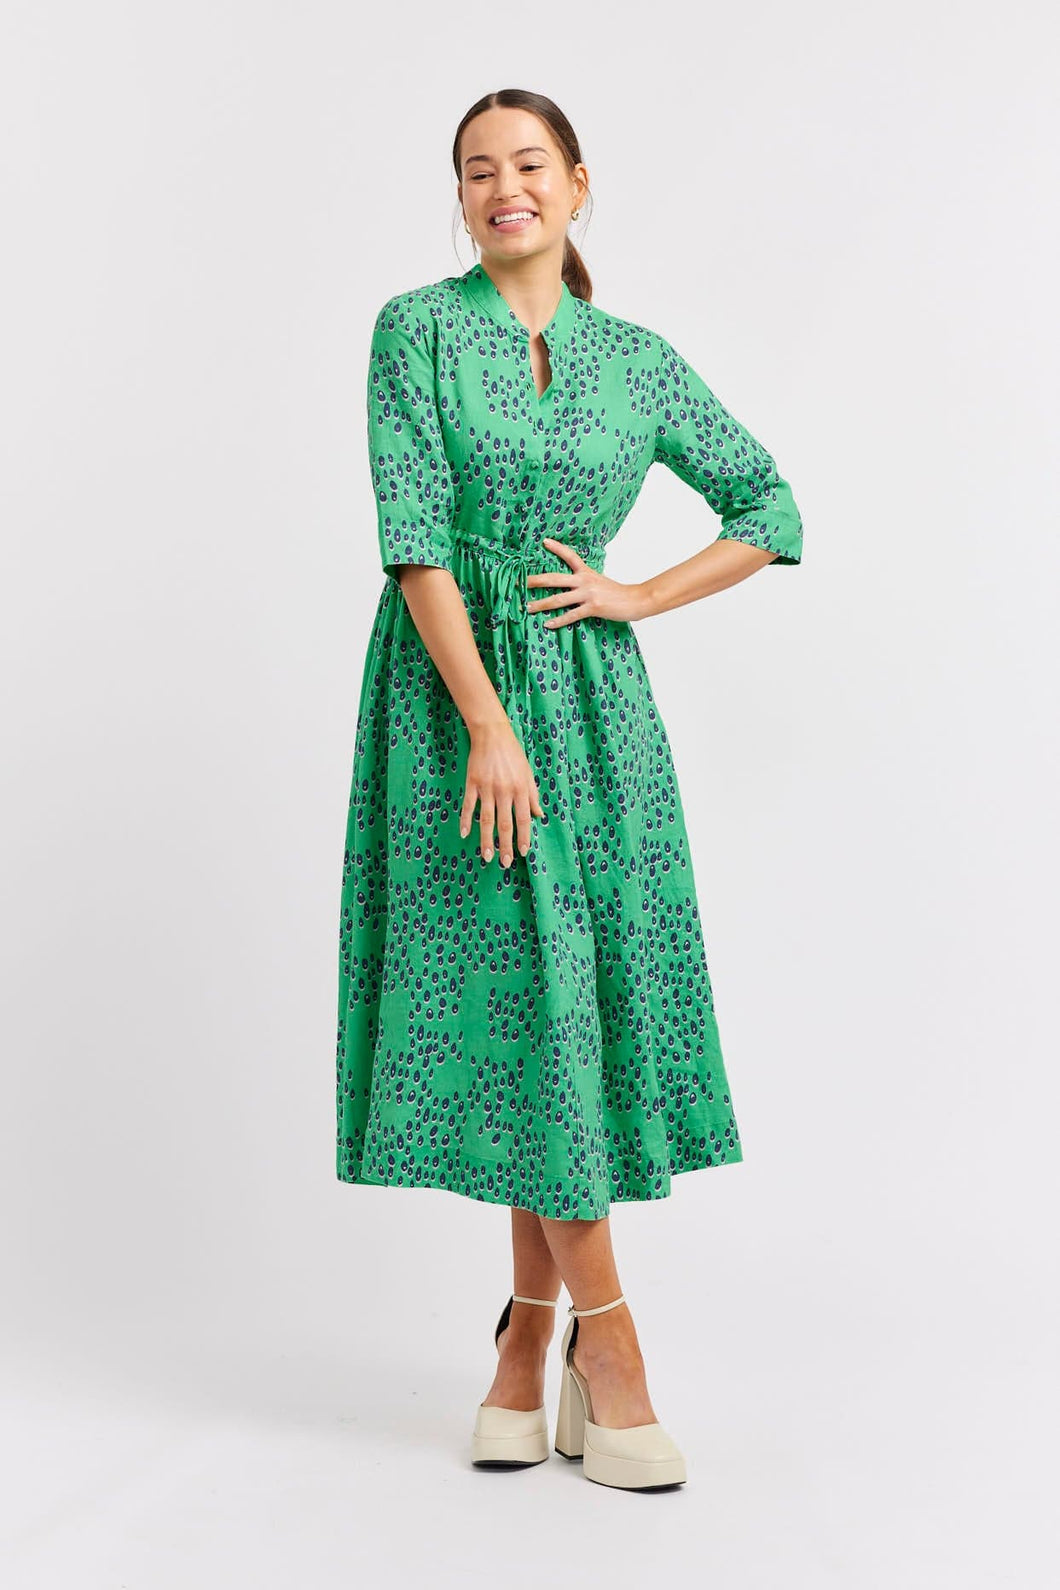 Serena Martini Linen Dress in Emerald by Alessandra